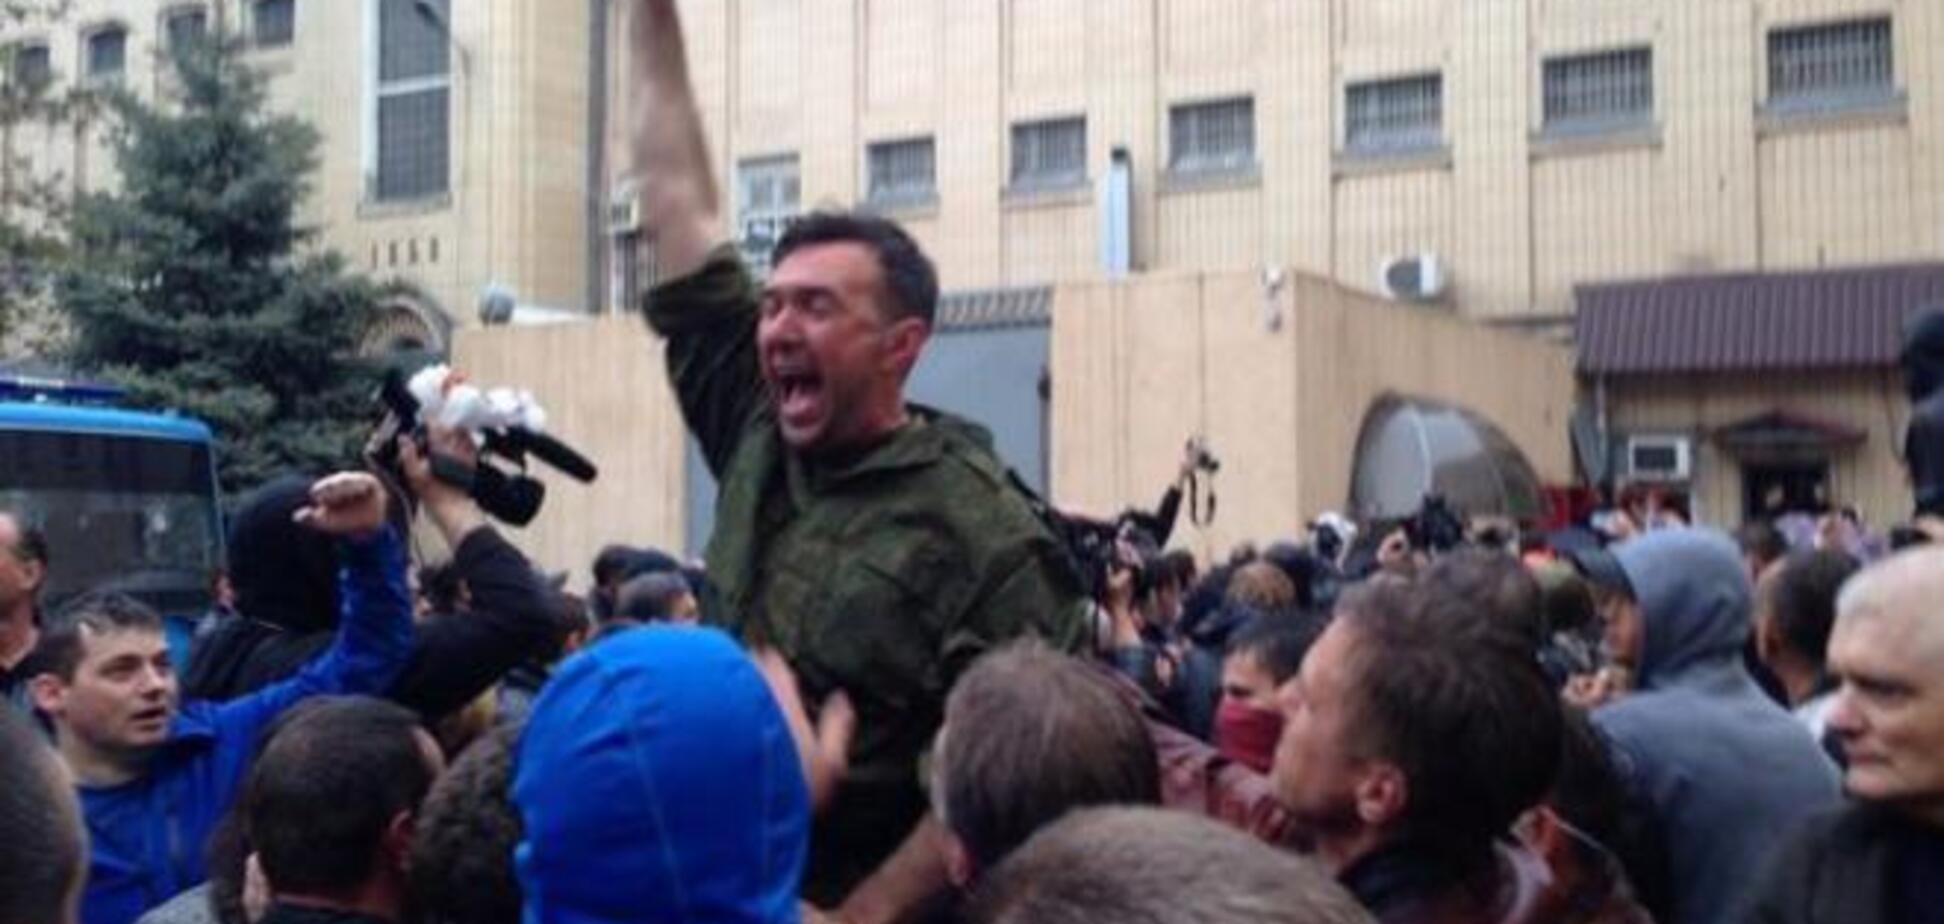 Пашинський пригрозив заступник генпрокурора, освободившему затриманих в Одесі, в'язницею